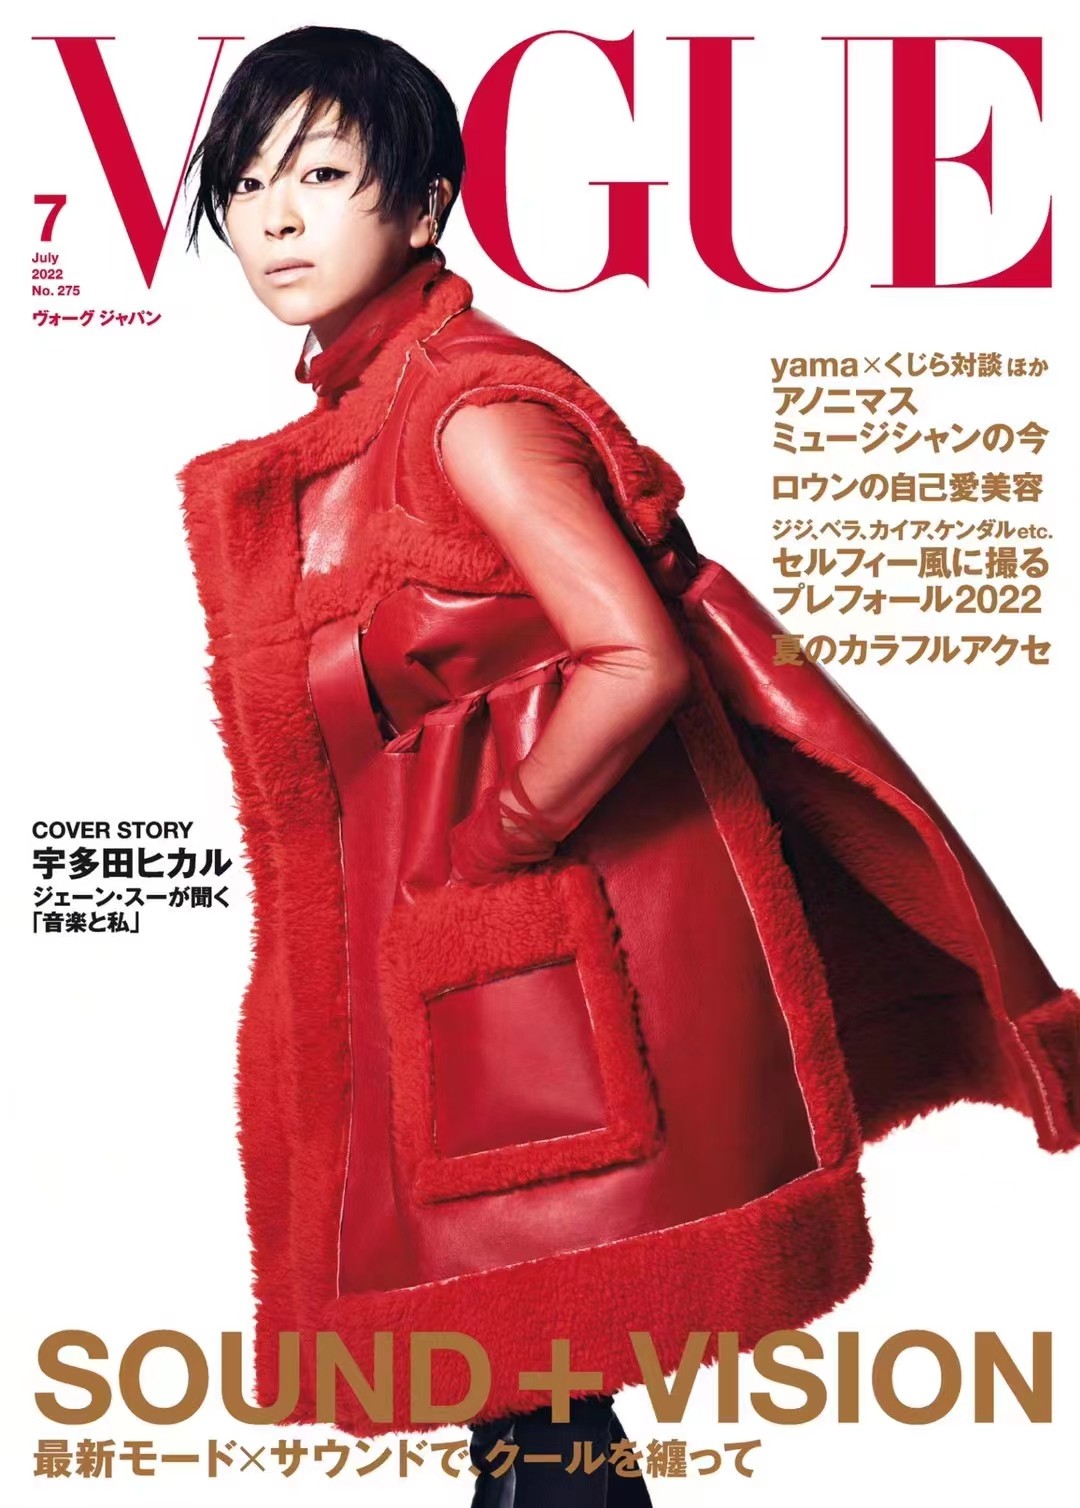 日本 030 [日本版]Vogue 女性时尚杂志 2022年7月刊 电子版「百度网盘下载」